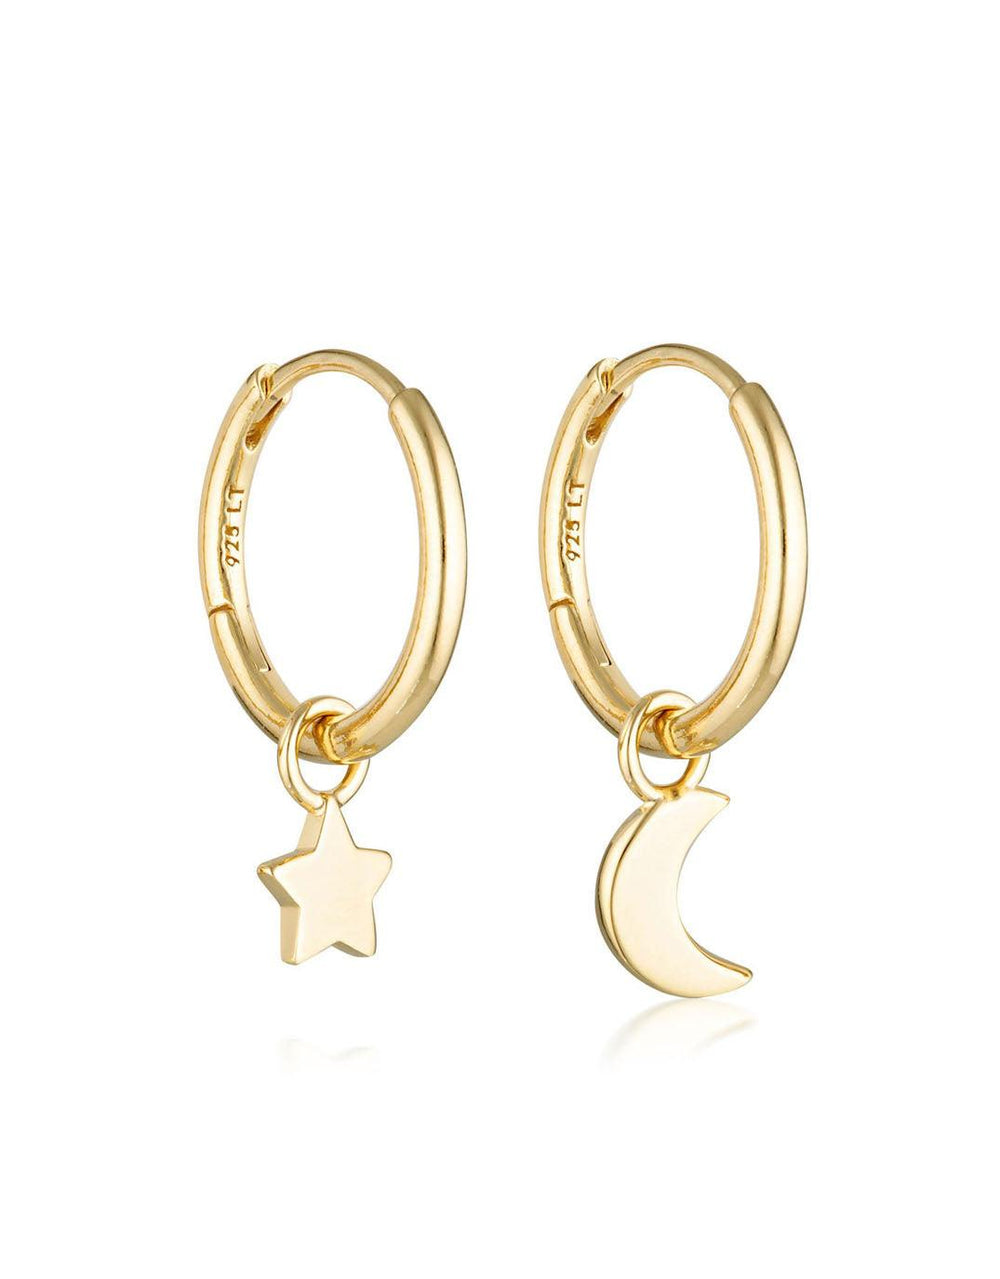 Linda Tahija Jewellery - Star & Moon Huggie Hoop Earrings - Gold Plated - paulaglazebrook Accessories